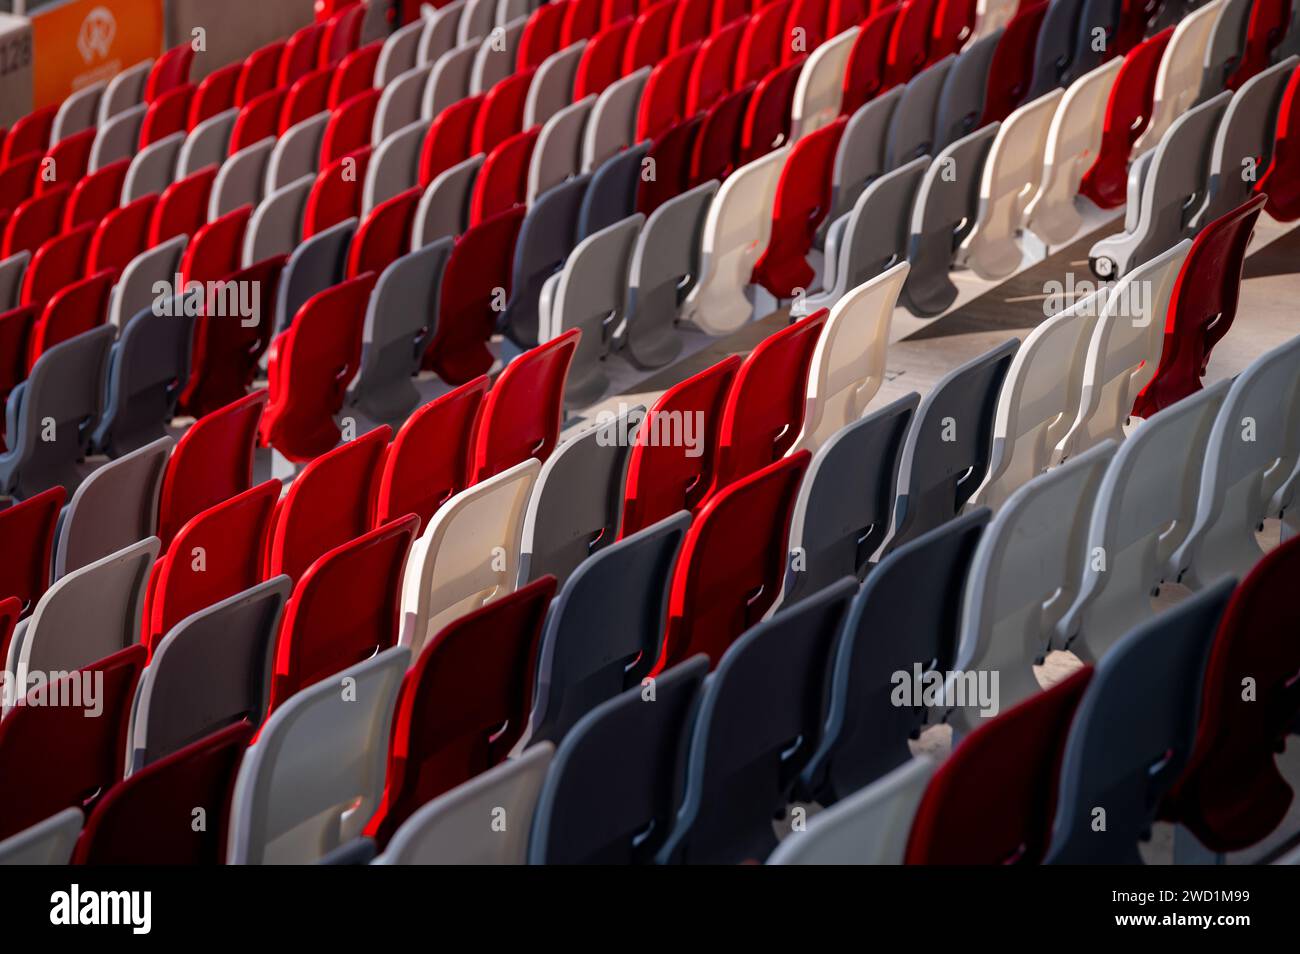 Asiento rojo y gris en una arena deportiva contemporánea Foto de stock